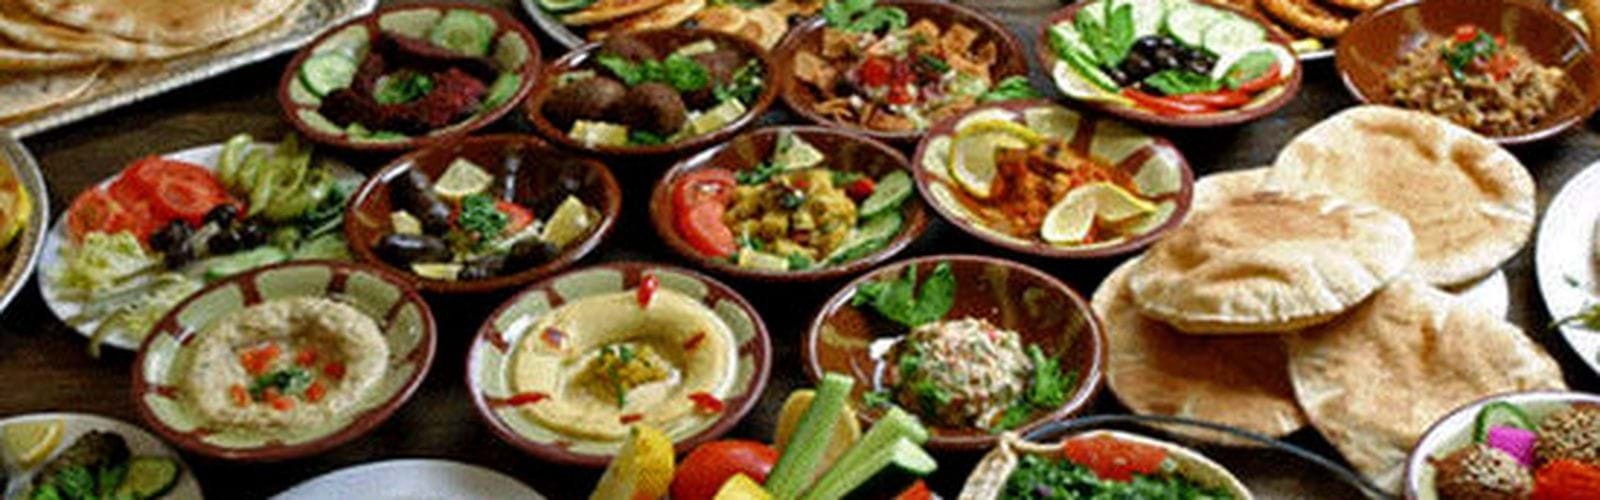 Jantando como um faraó: comida egípcia tradicional